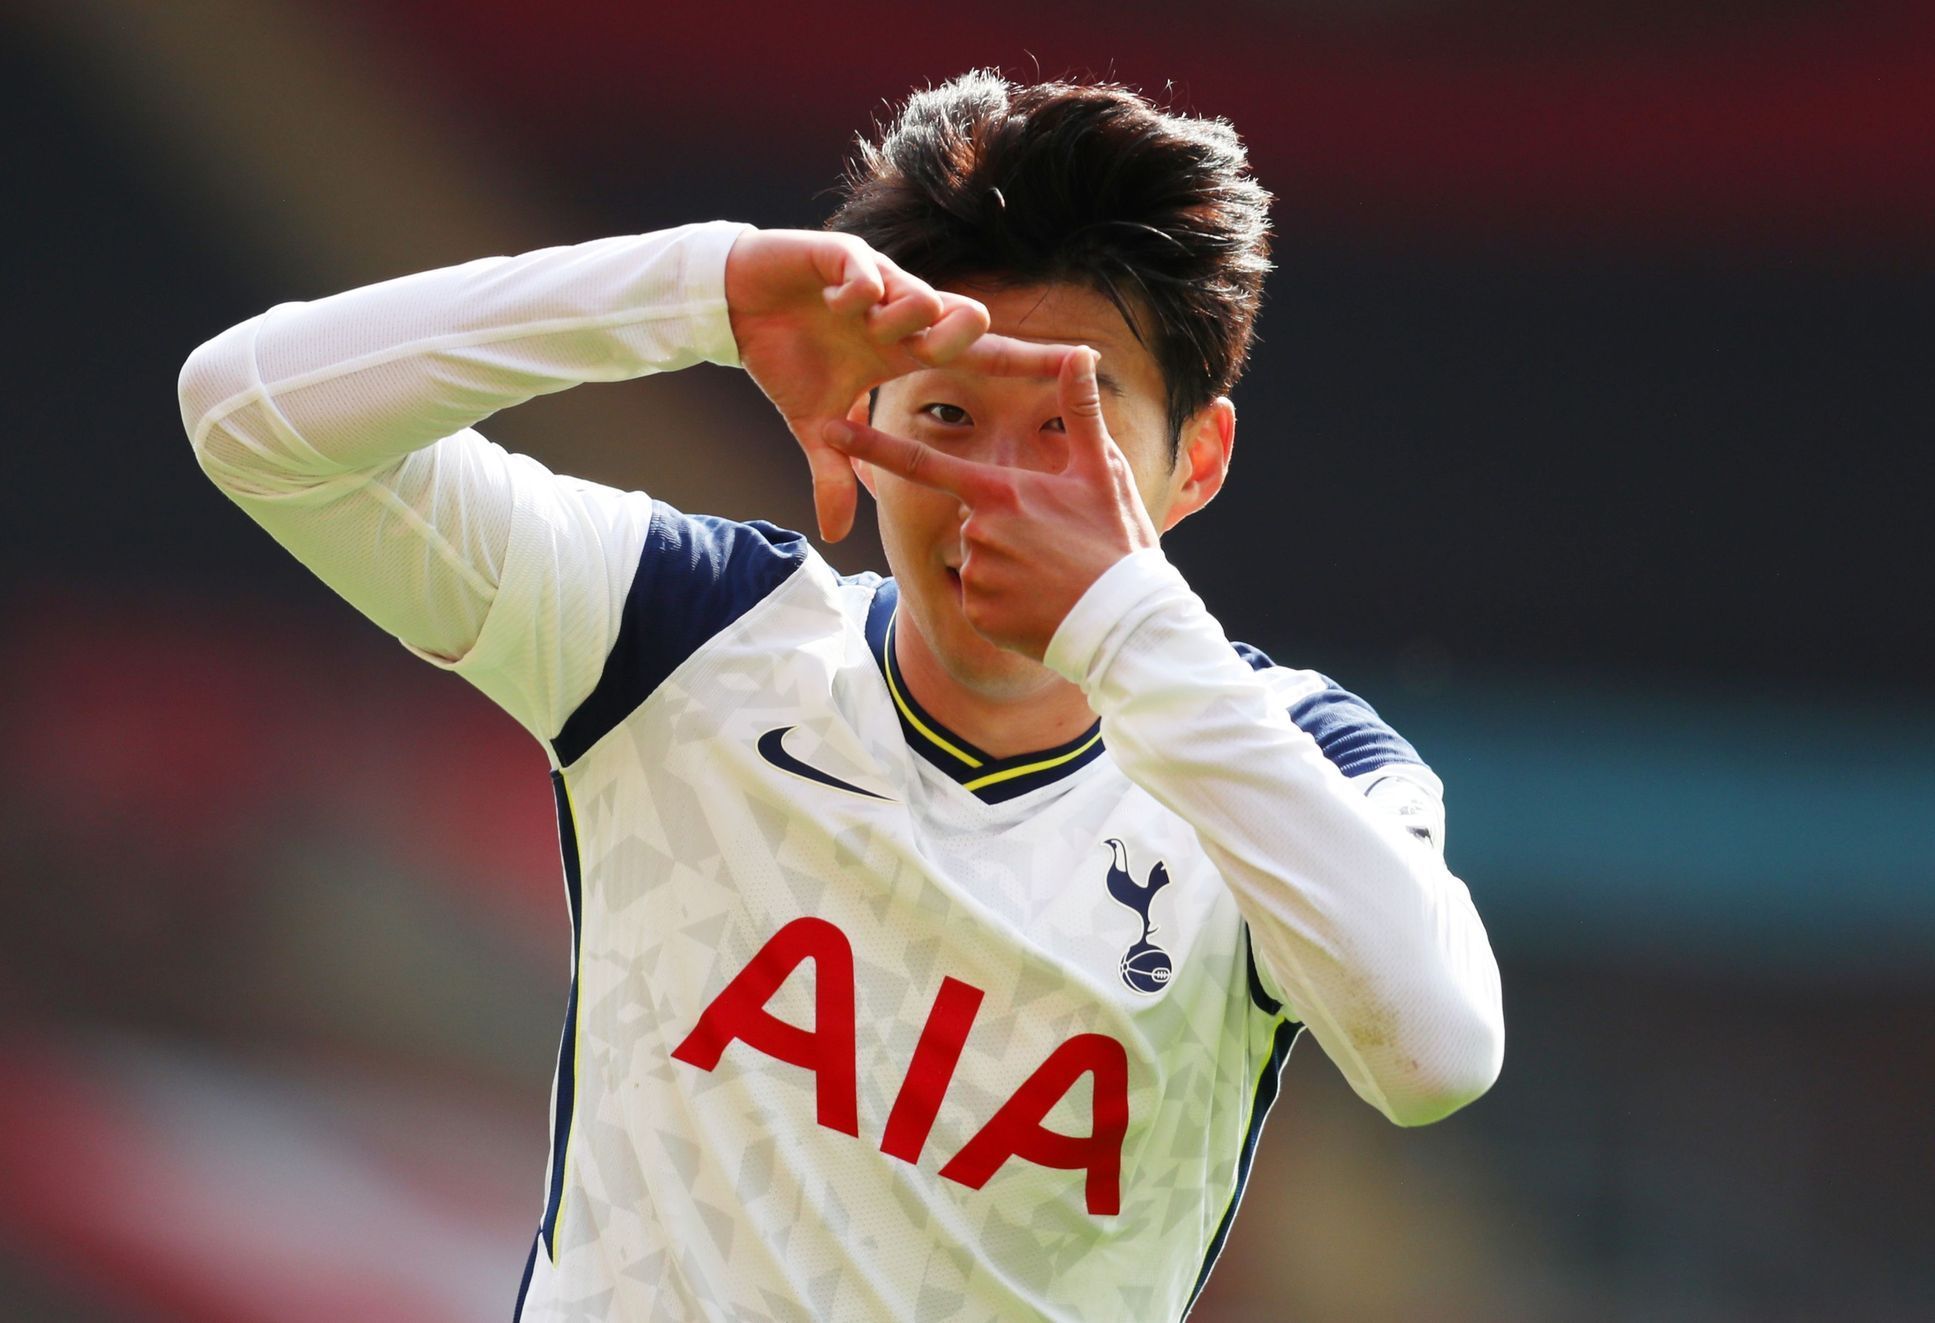 2. kolo anglické fotbalové ligy 2020/21, Southampton - Tottenham: Son Hung-min z Tottenhamu slaví jeden ze svých čtyř gólů